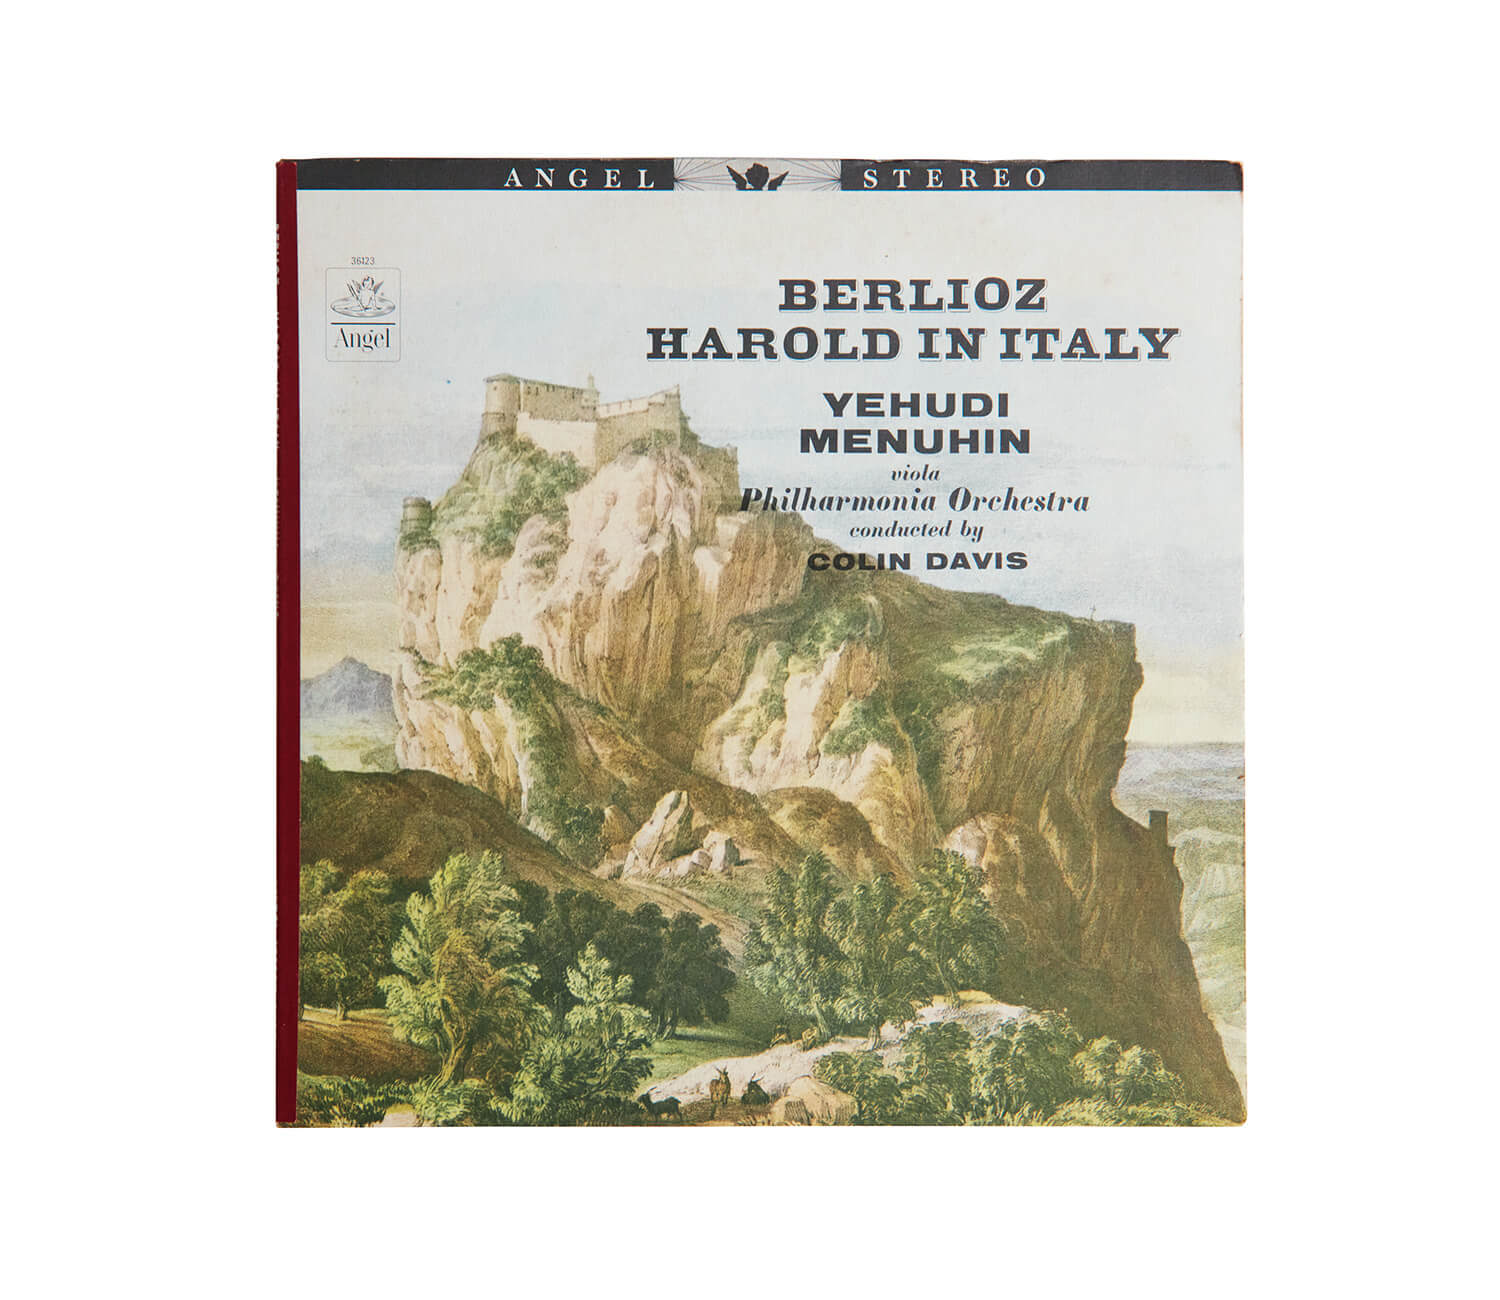 ユーディ・メニューインが演奏した、ベルリオーズ「イタリアのハロルド」レコードジャケット